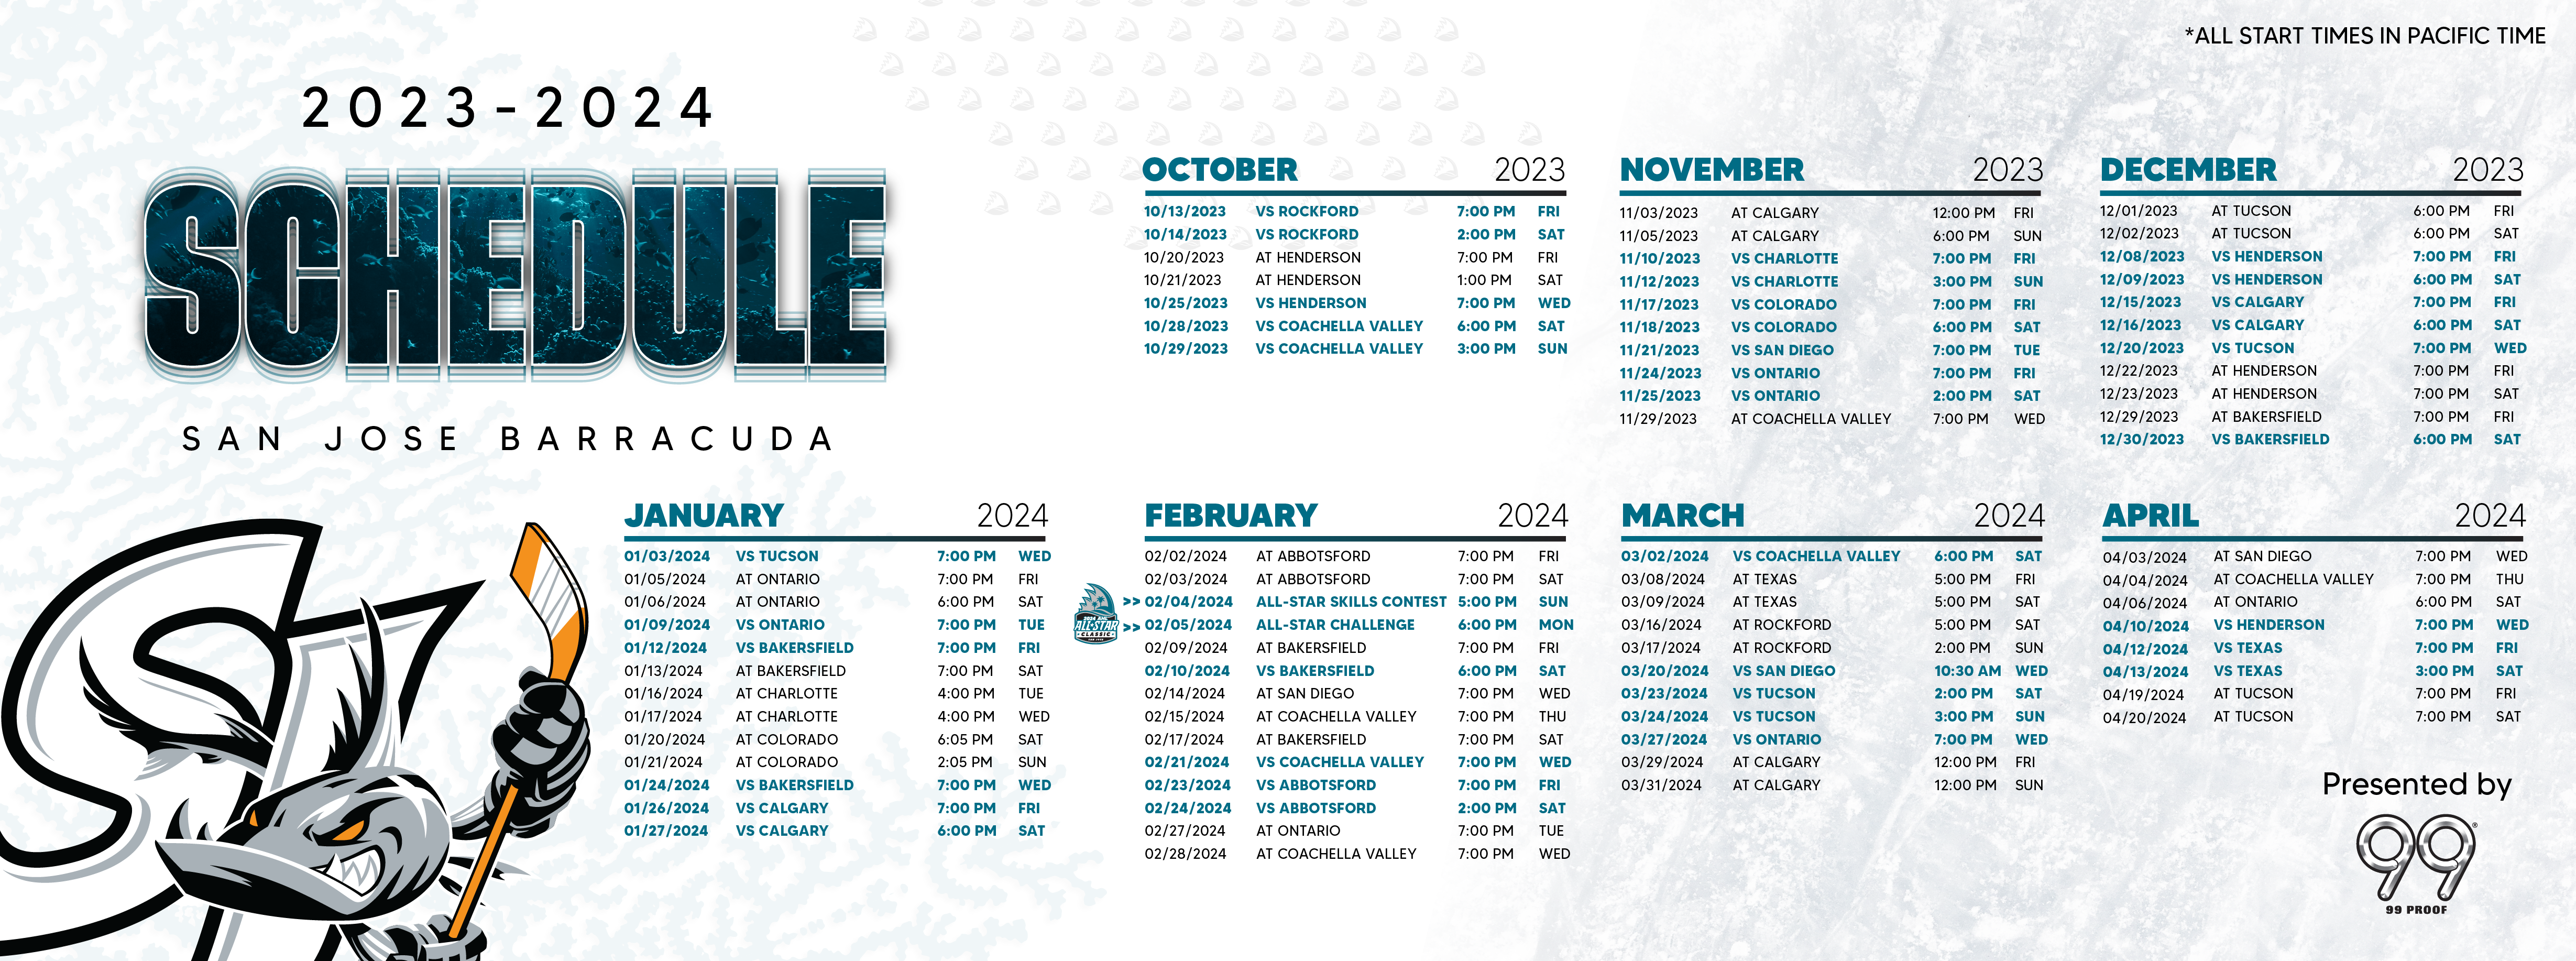 Colorado Avalanche 2023/24 Schedule